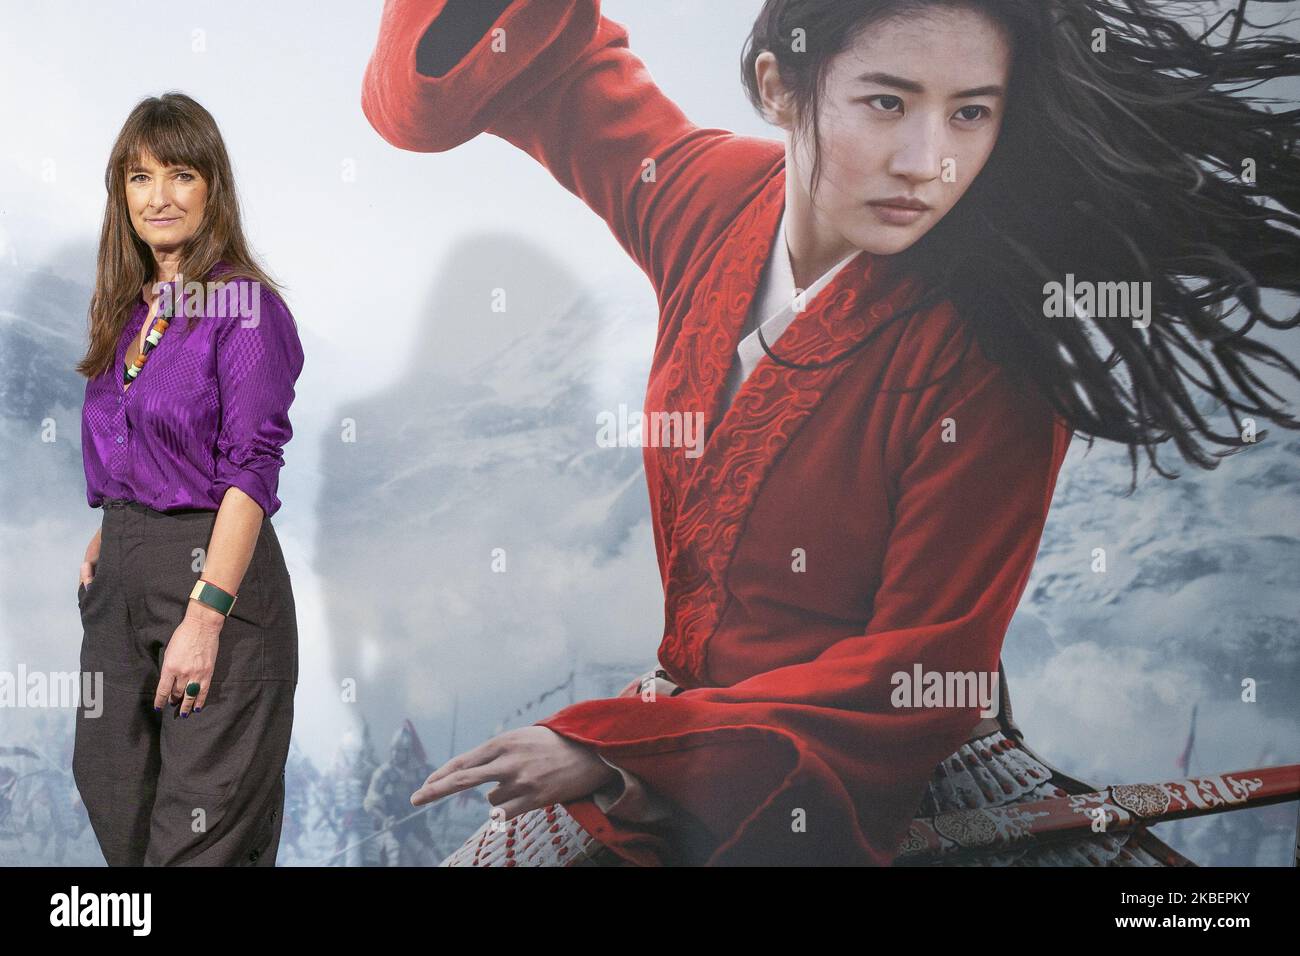 Il costume designer del film, Bina Dailinger, posa per la foto della presentazione del film ‘Mulan’ Disney all’Hotel Santo Mauro il 17 gennaio 2020 a Madrid, Spagna. (Foto di Oscar Gonzalez/NurPhoto) Foto Stock